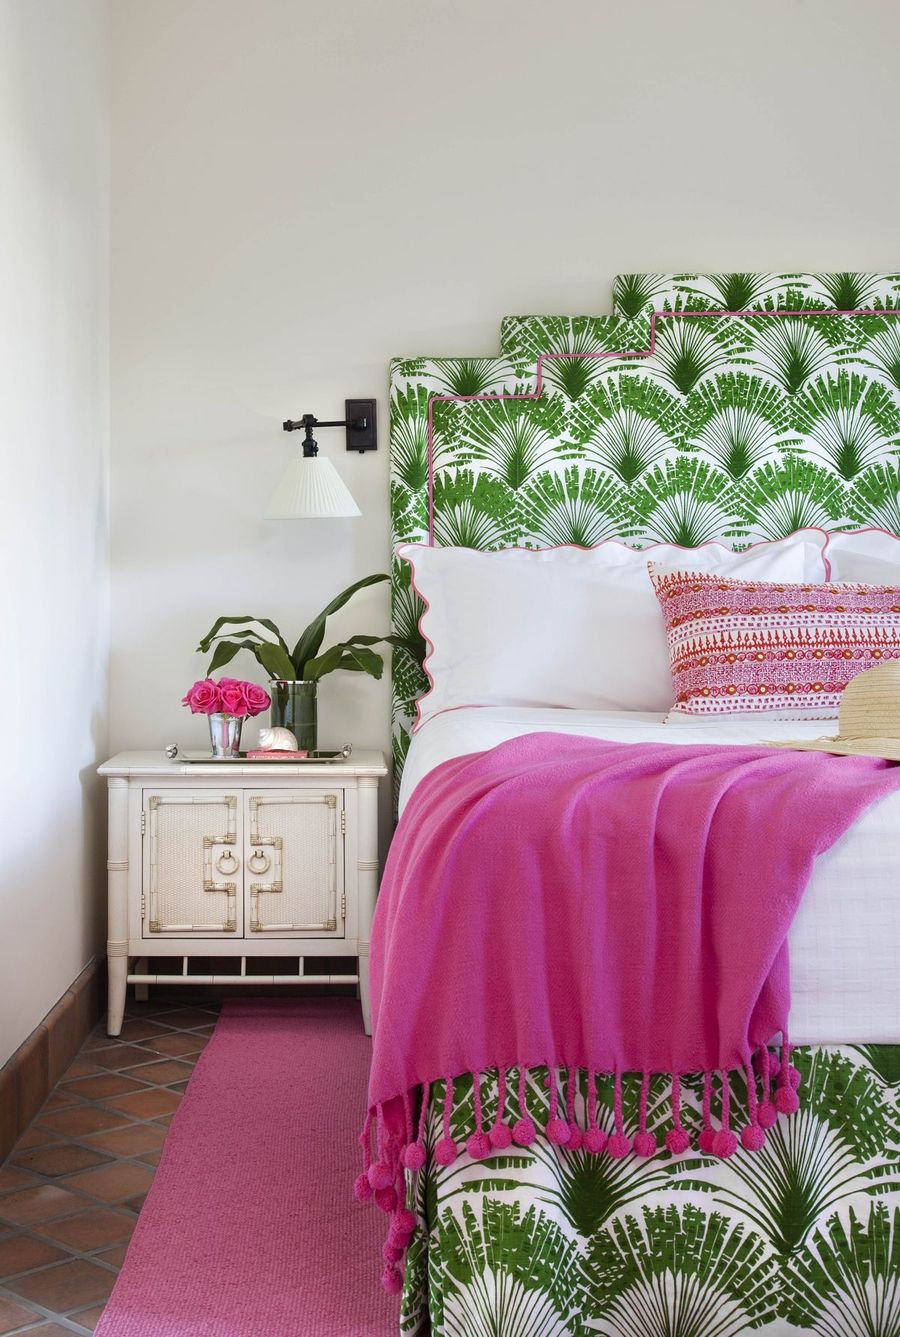 White Rattan Nightstand in Tropical Bedroom via Anne Hepfer